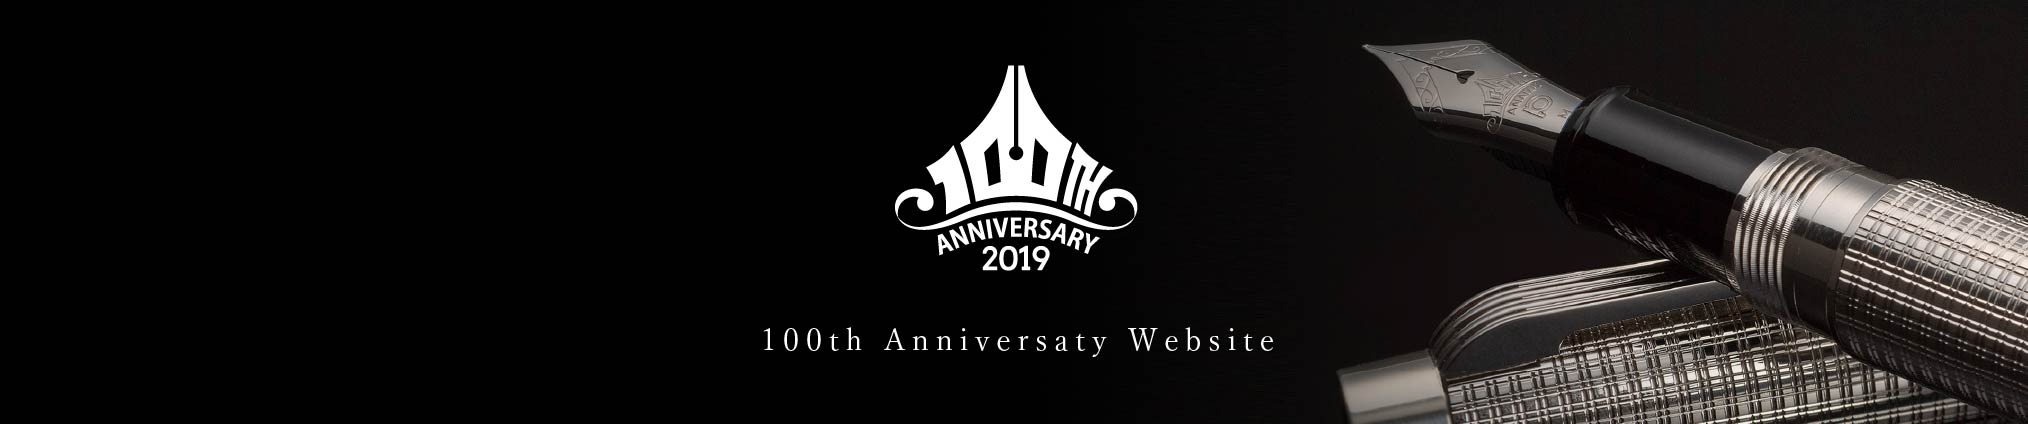 ANNIVERSARY 2019 100周年記念サイト